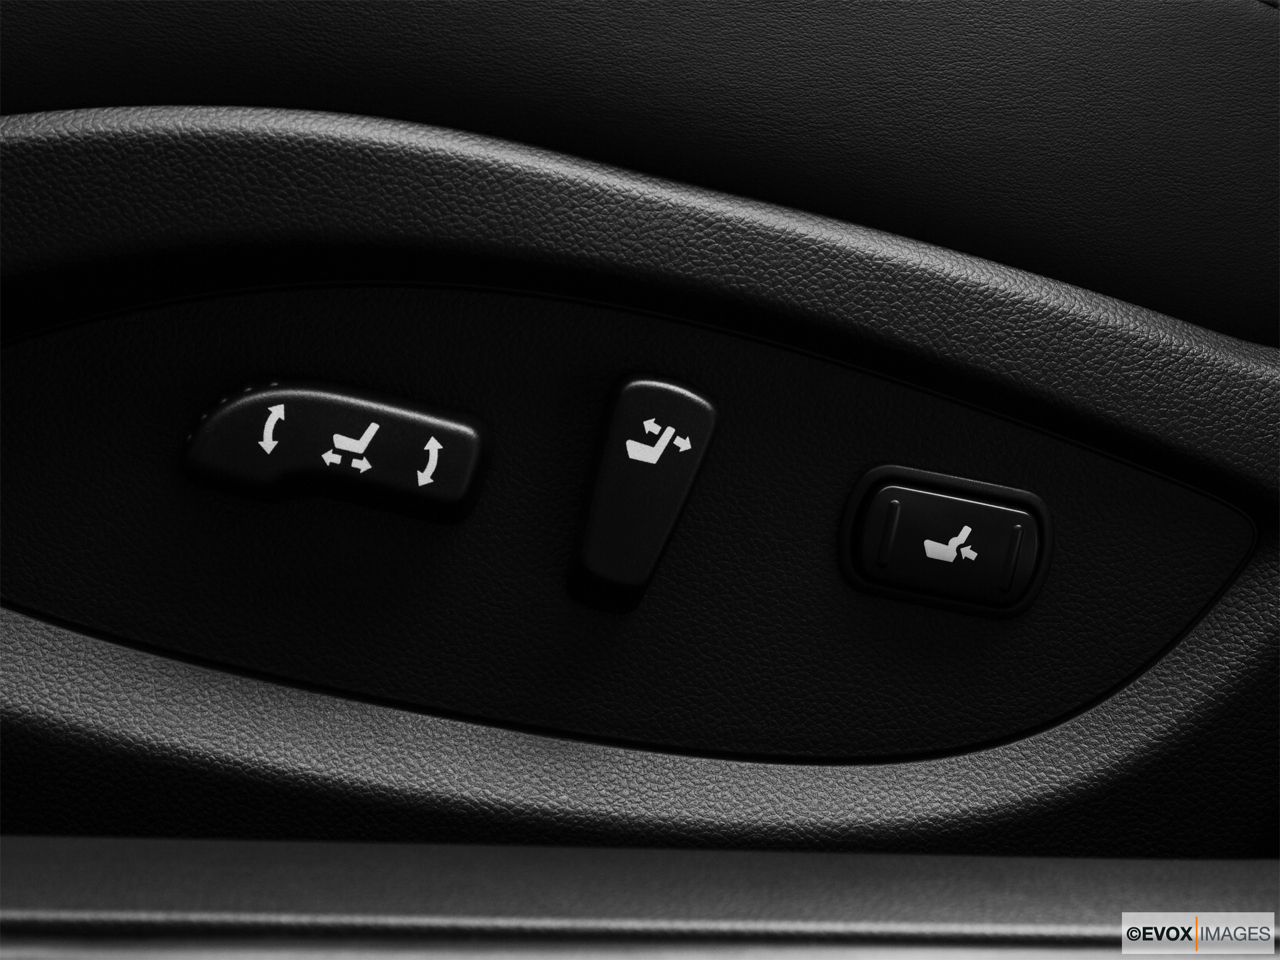 2010 Infiniti EX EX35 Journey Seat Adjustment Controllers. 